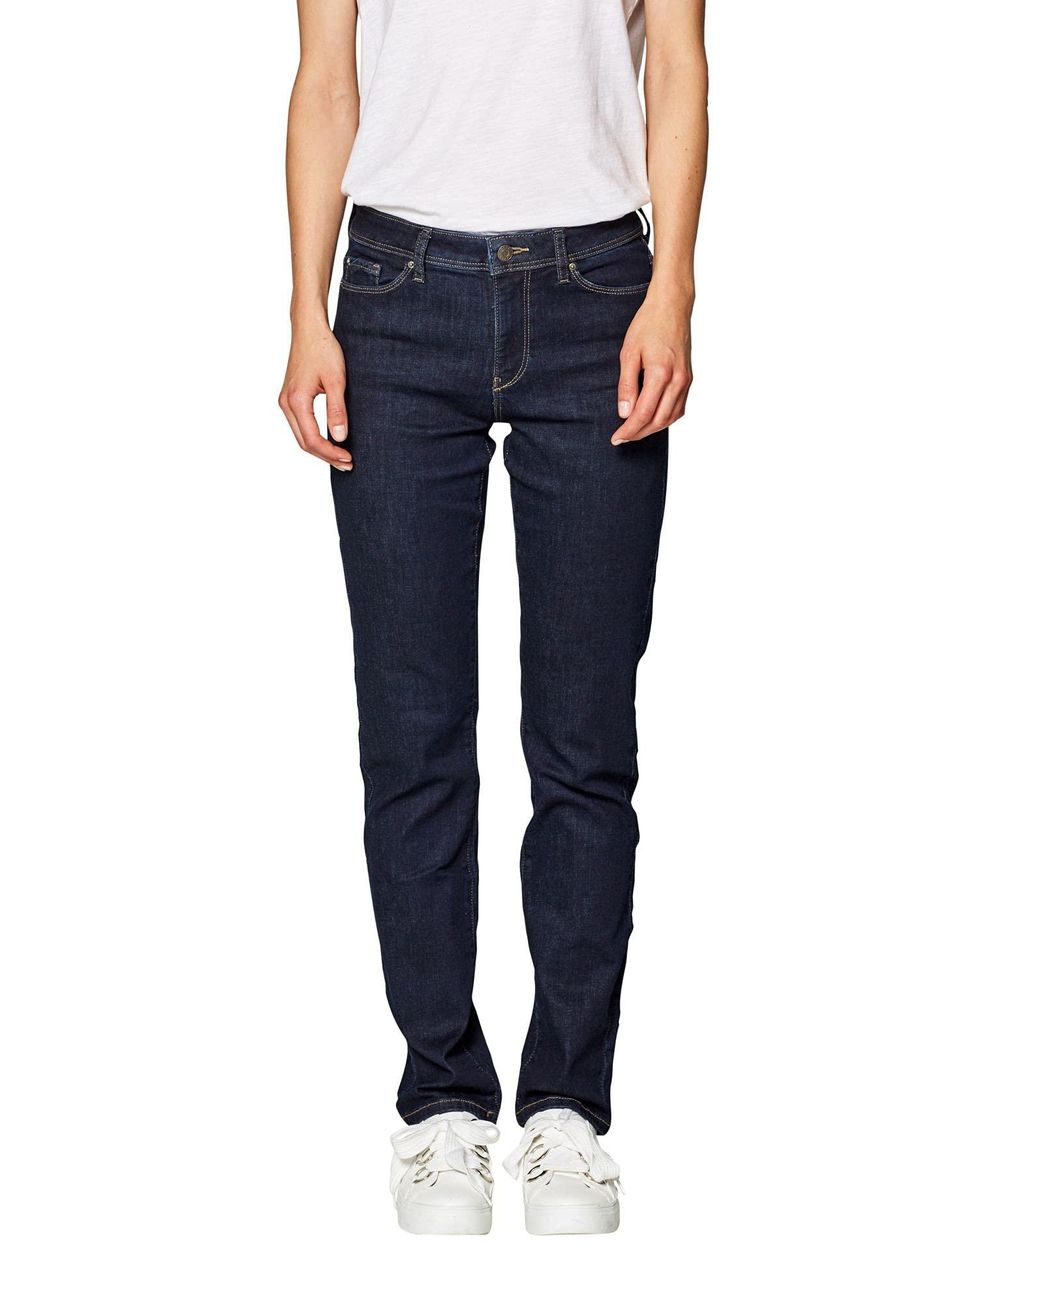 Esprit Denim Damen Straight Jeans in Blau - Sparen Sie 35% | Lyst DE